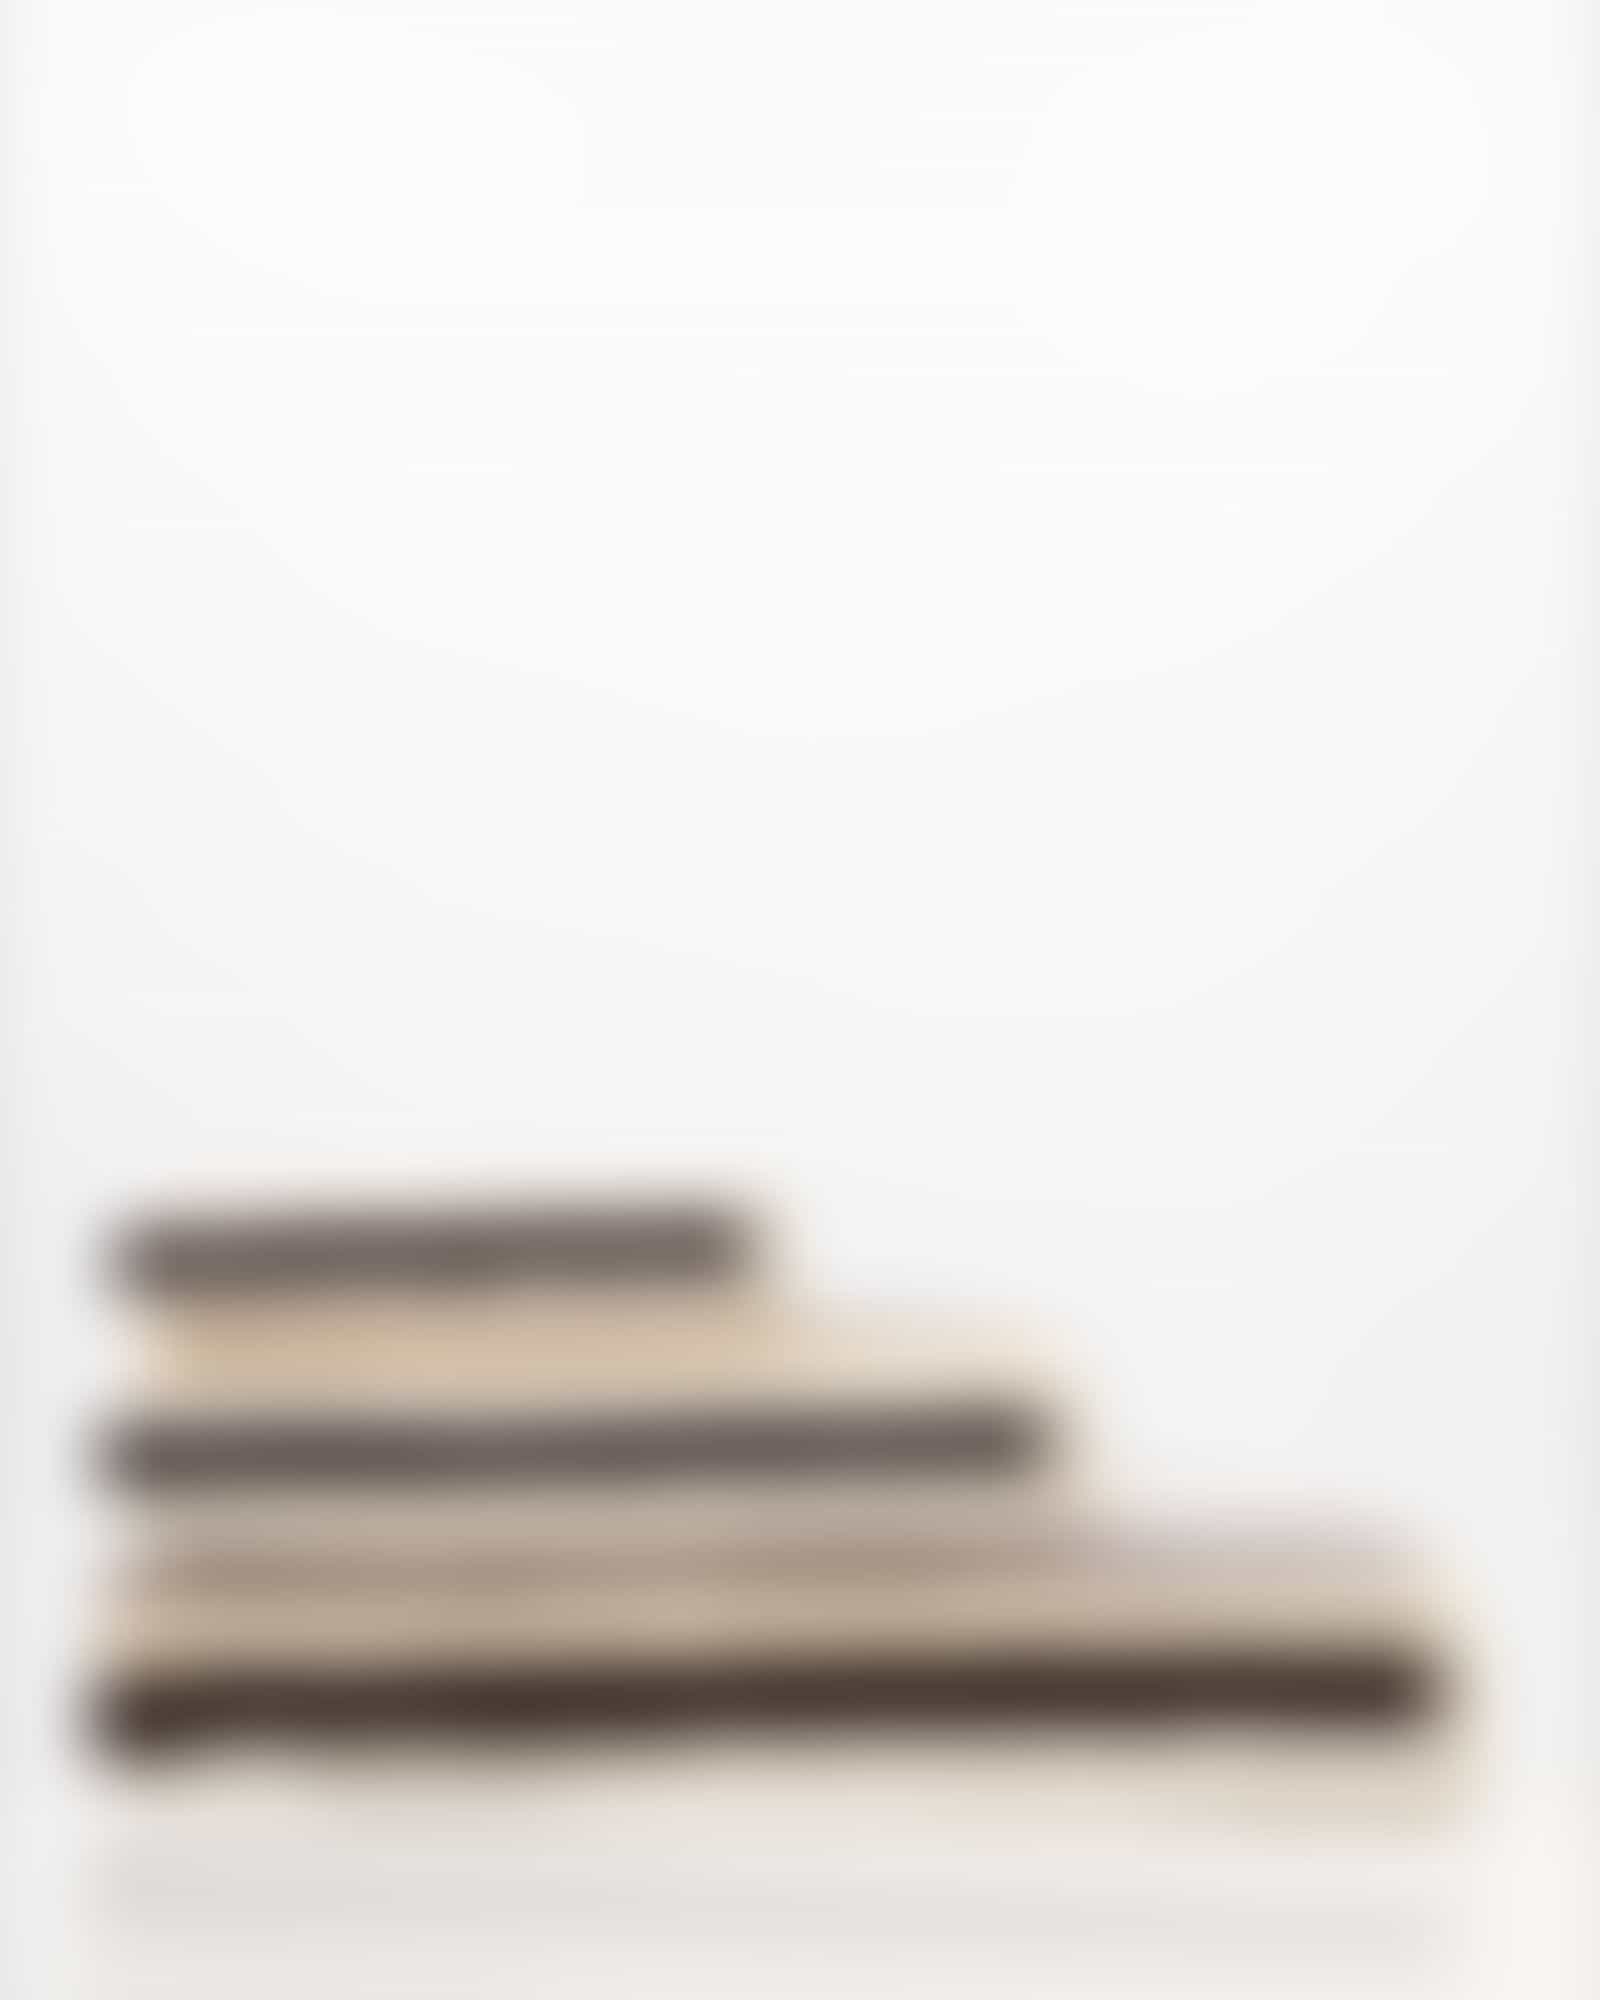 Cawö Handtücher Shades Streifen 6235 - Farbe: sand - 33 - Gästetuch 30x50 cm